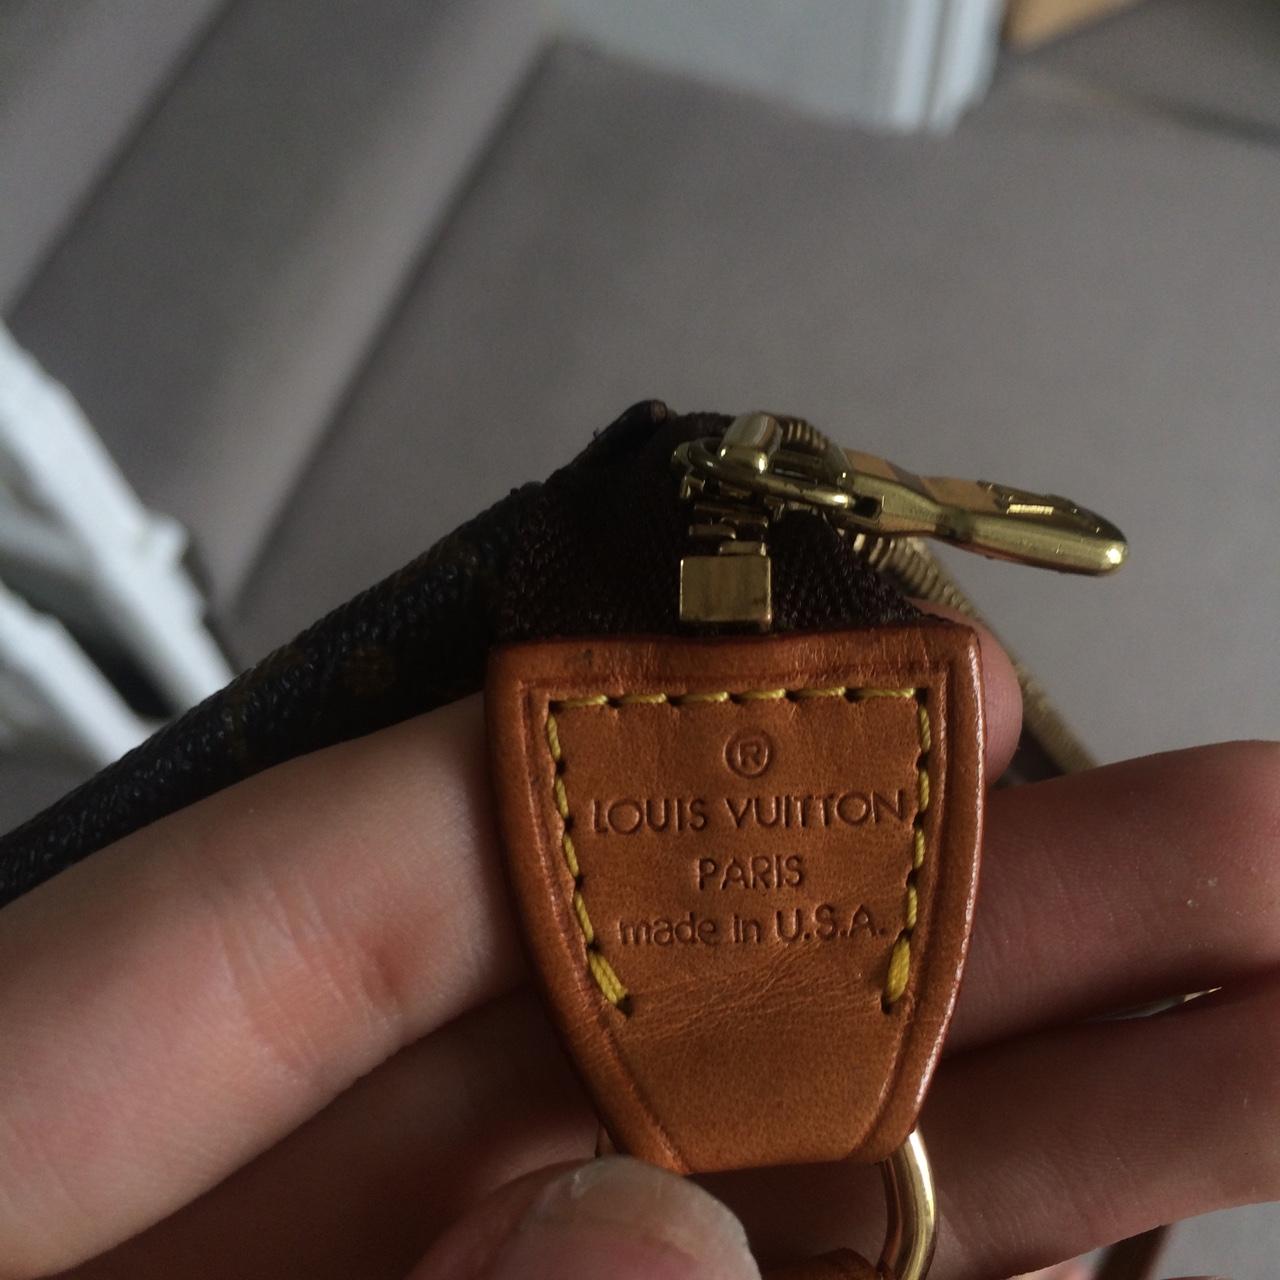 Genuine Louis Vuitton y2k handbag 😍😍 reasonable